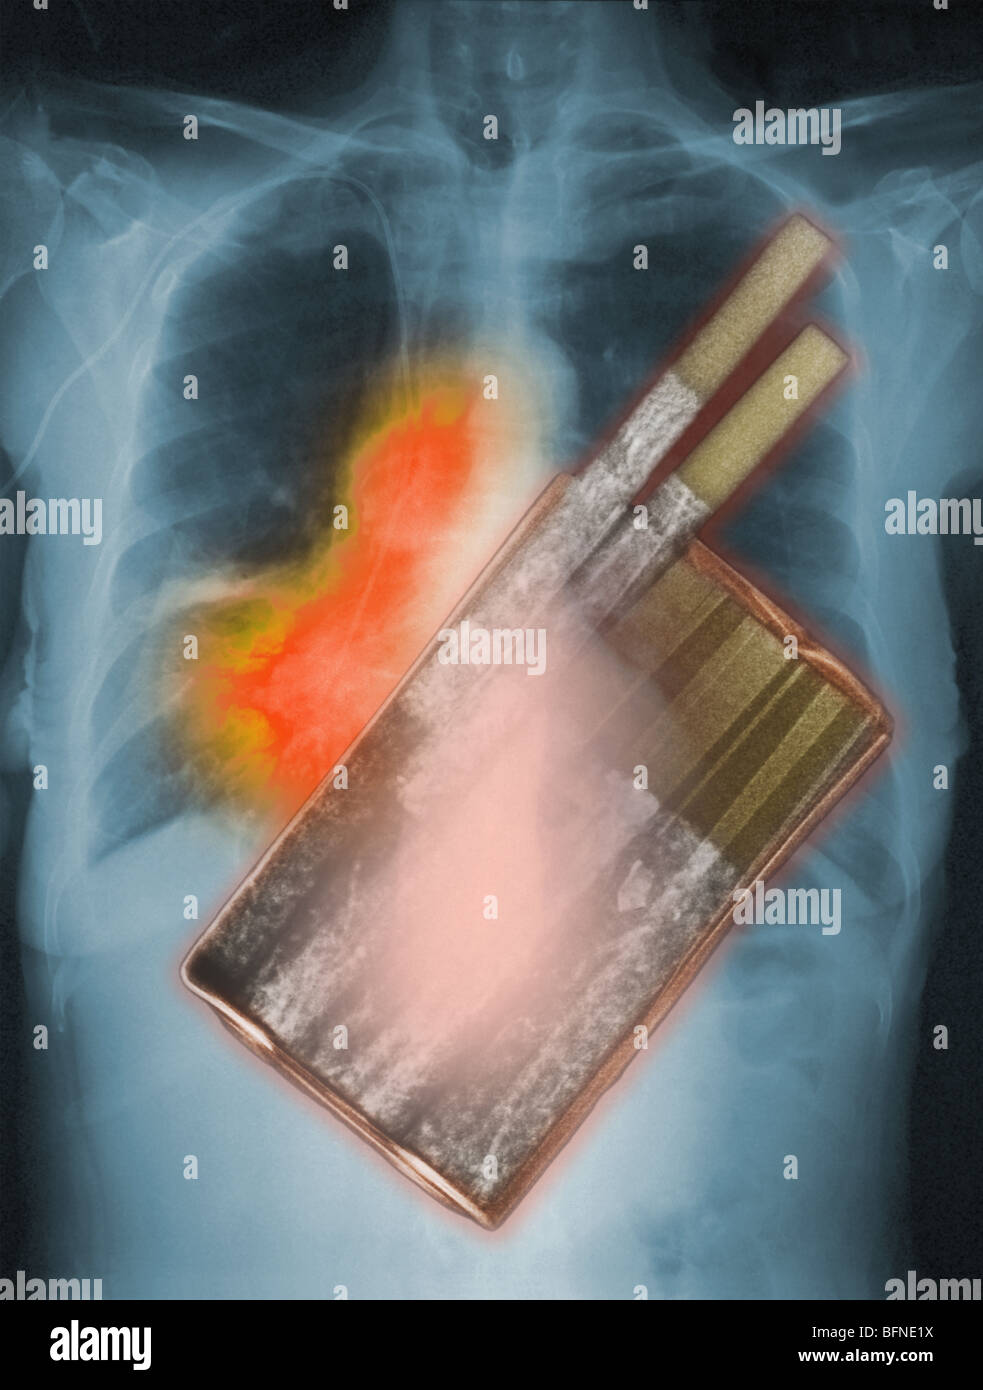 Les cigarettes, la principale cause de cancer du poumon, en surimpression sur une radiographie montrant le cancer du poumon Banque D'Images